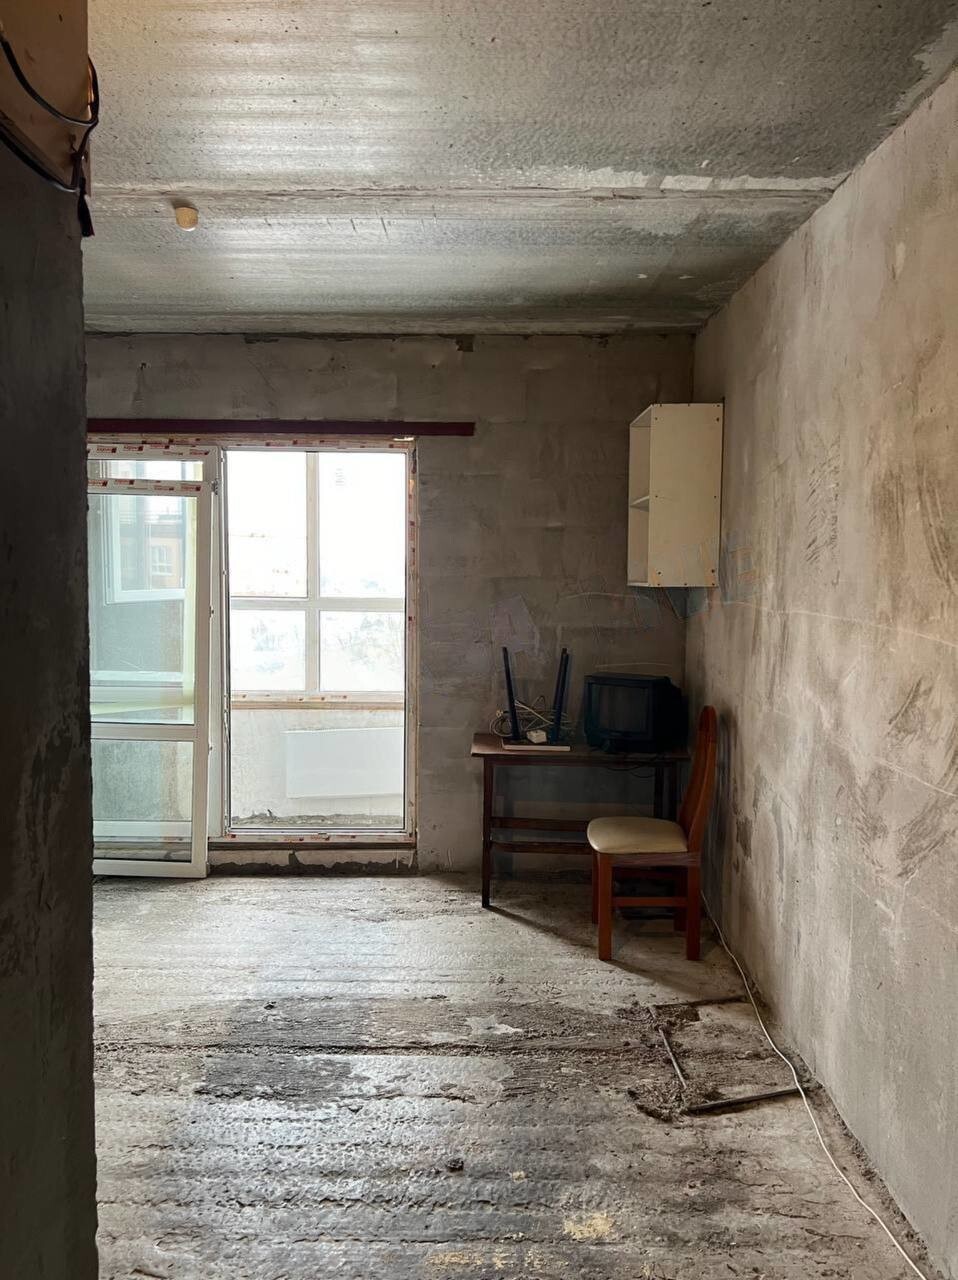 Бетонная коробка за 19 000 в месяц: найдена самая суровая квартира для аренды